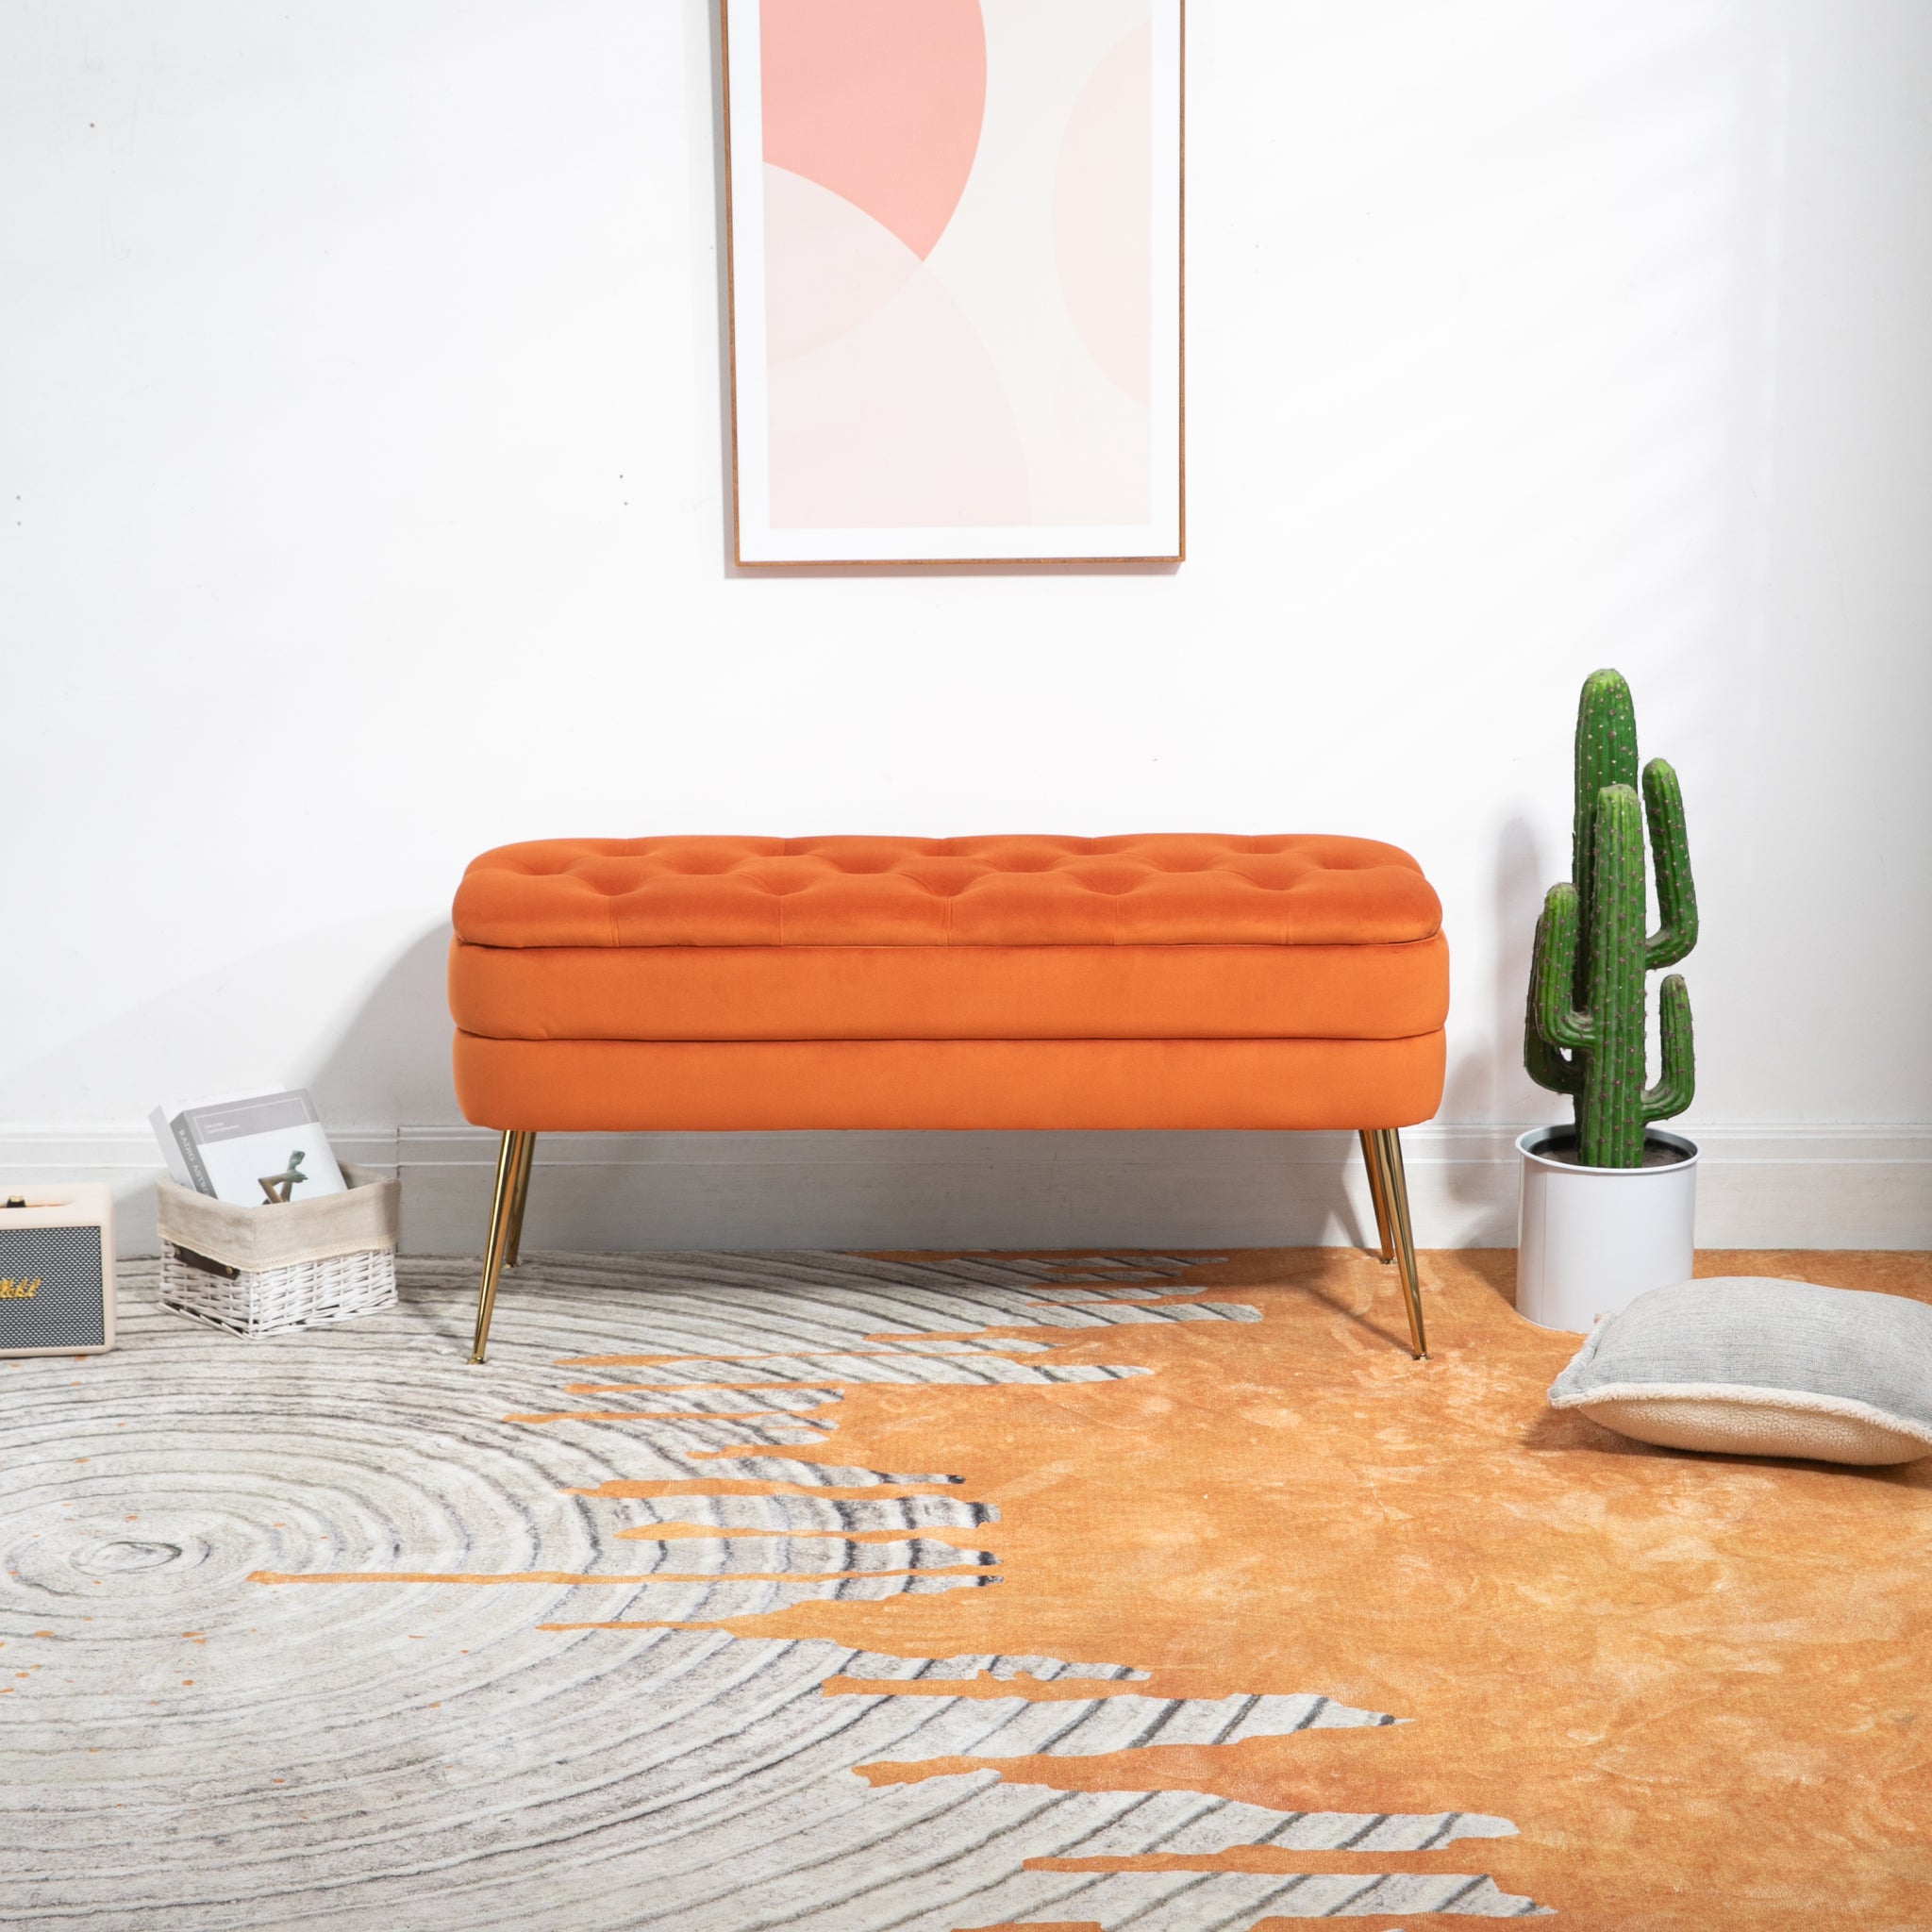 COOLMORE Storage Ottoman,Bedroom End Bench,Upholstered orange-velvet